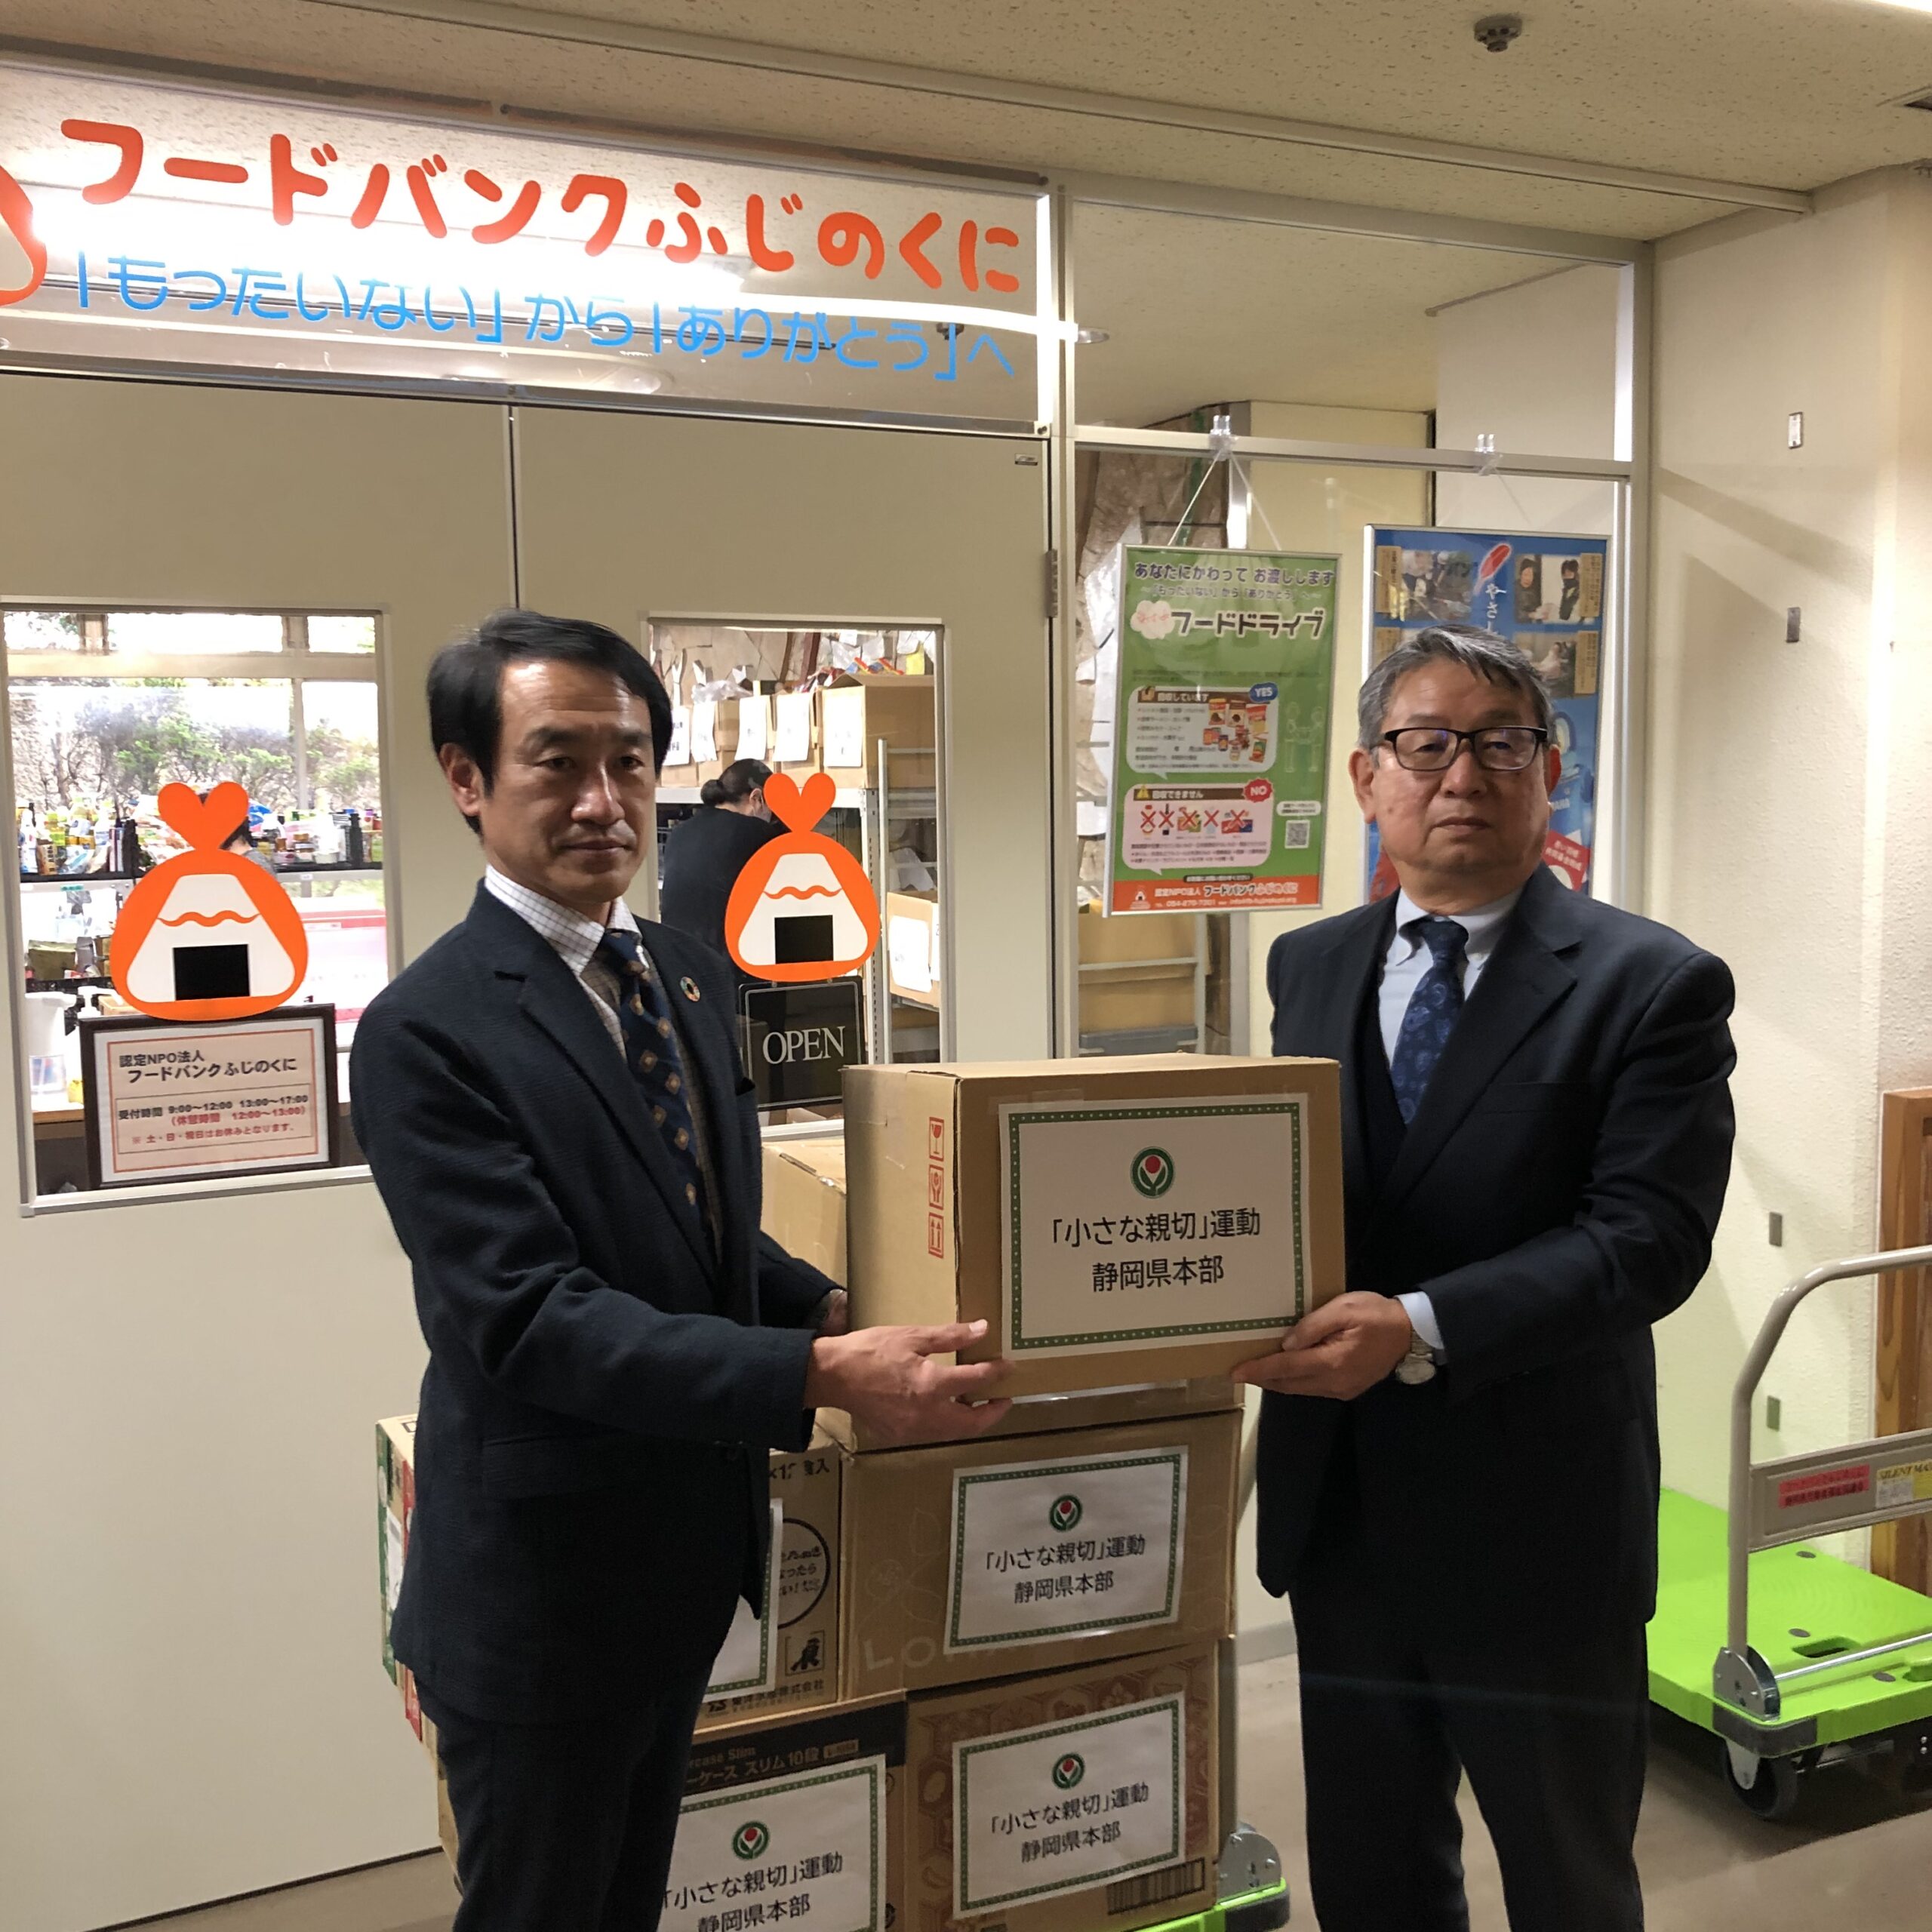 「小さな親切」運動静岡県本部から食品を寄贈していただきました。